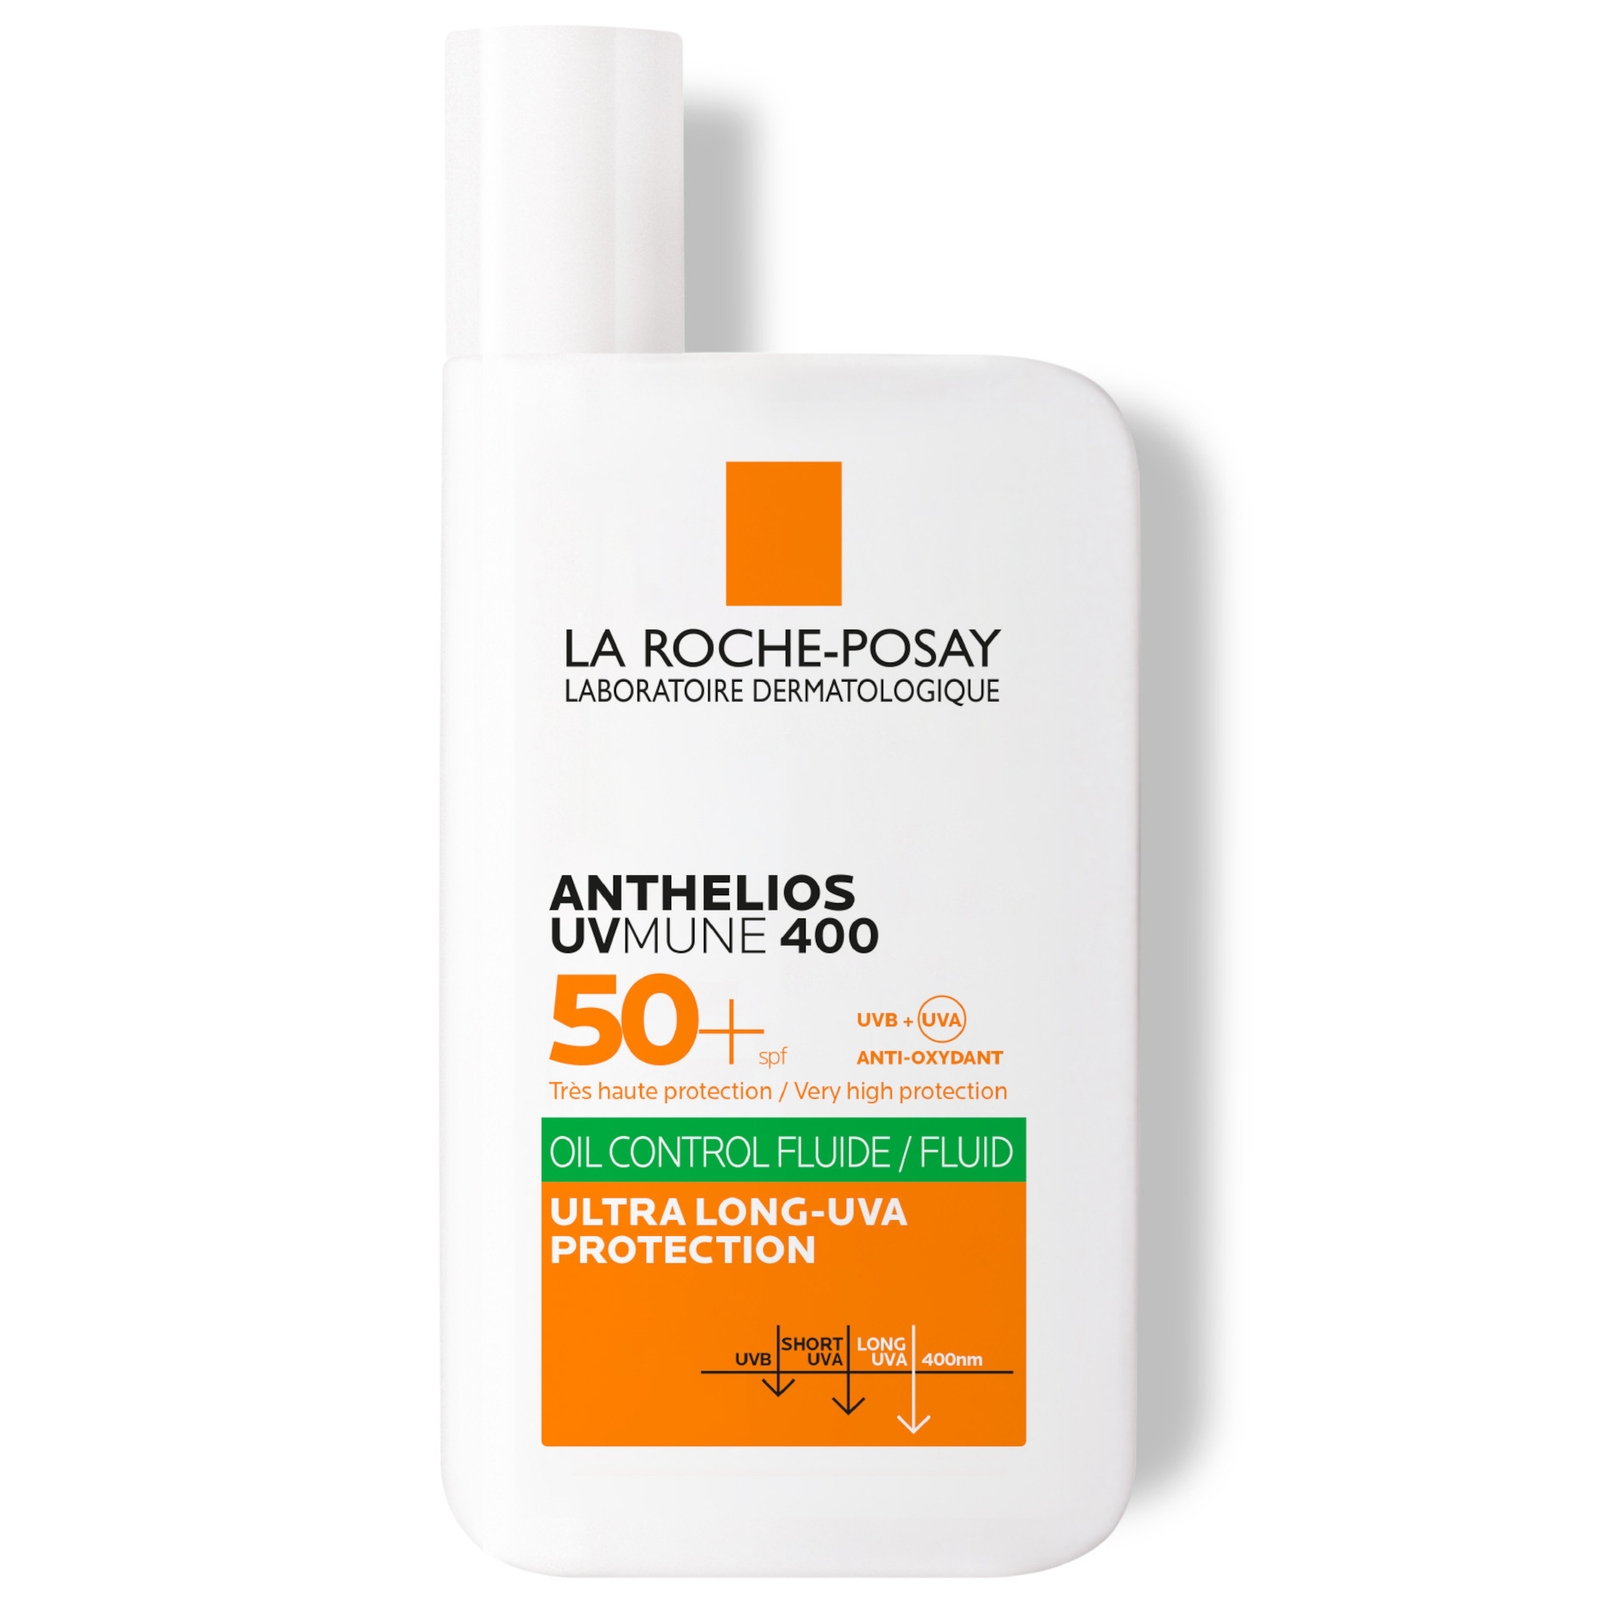 La Roche-Posay Anthelios Oil Control Fluid SPF50+ for Oily Blemish-Prone Skin 50ml von La Roche-Posay